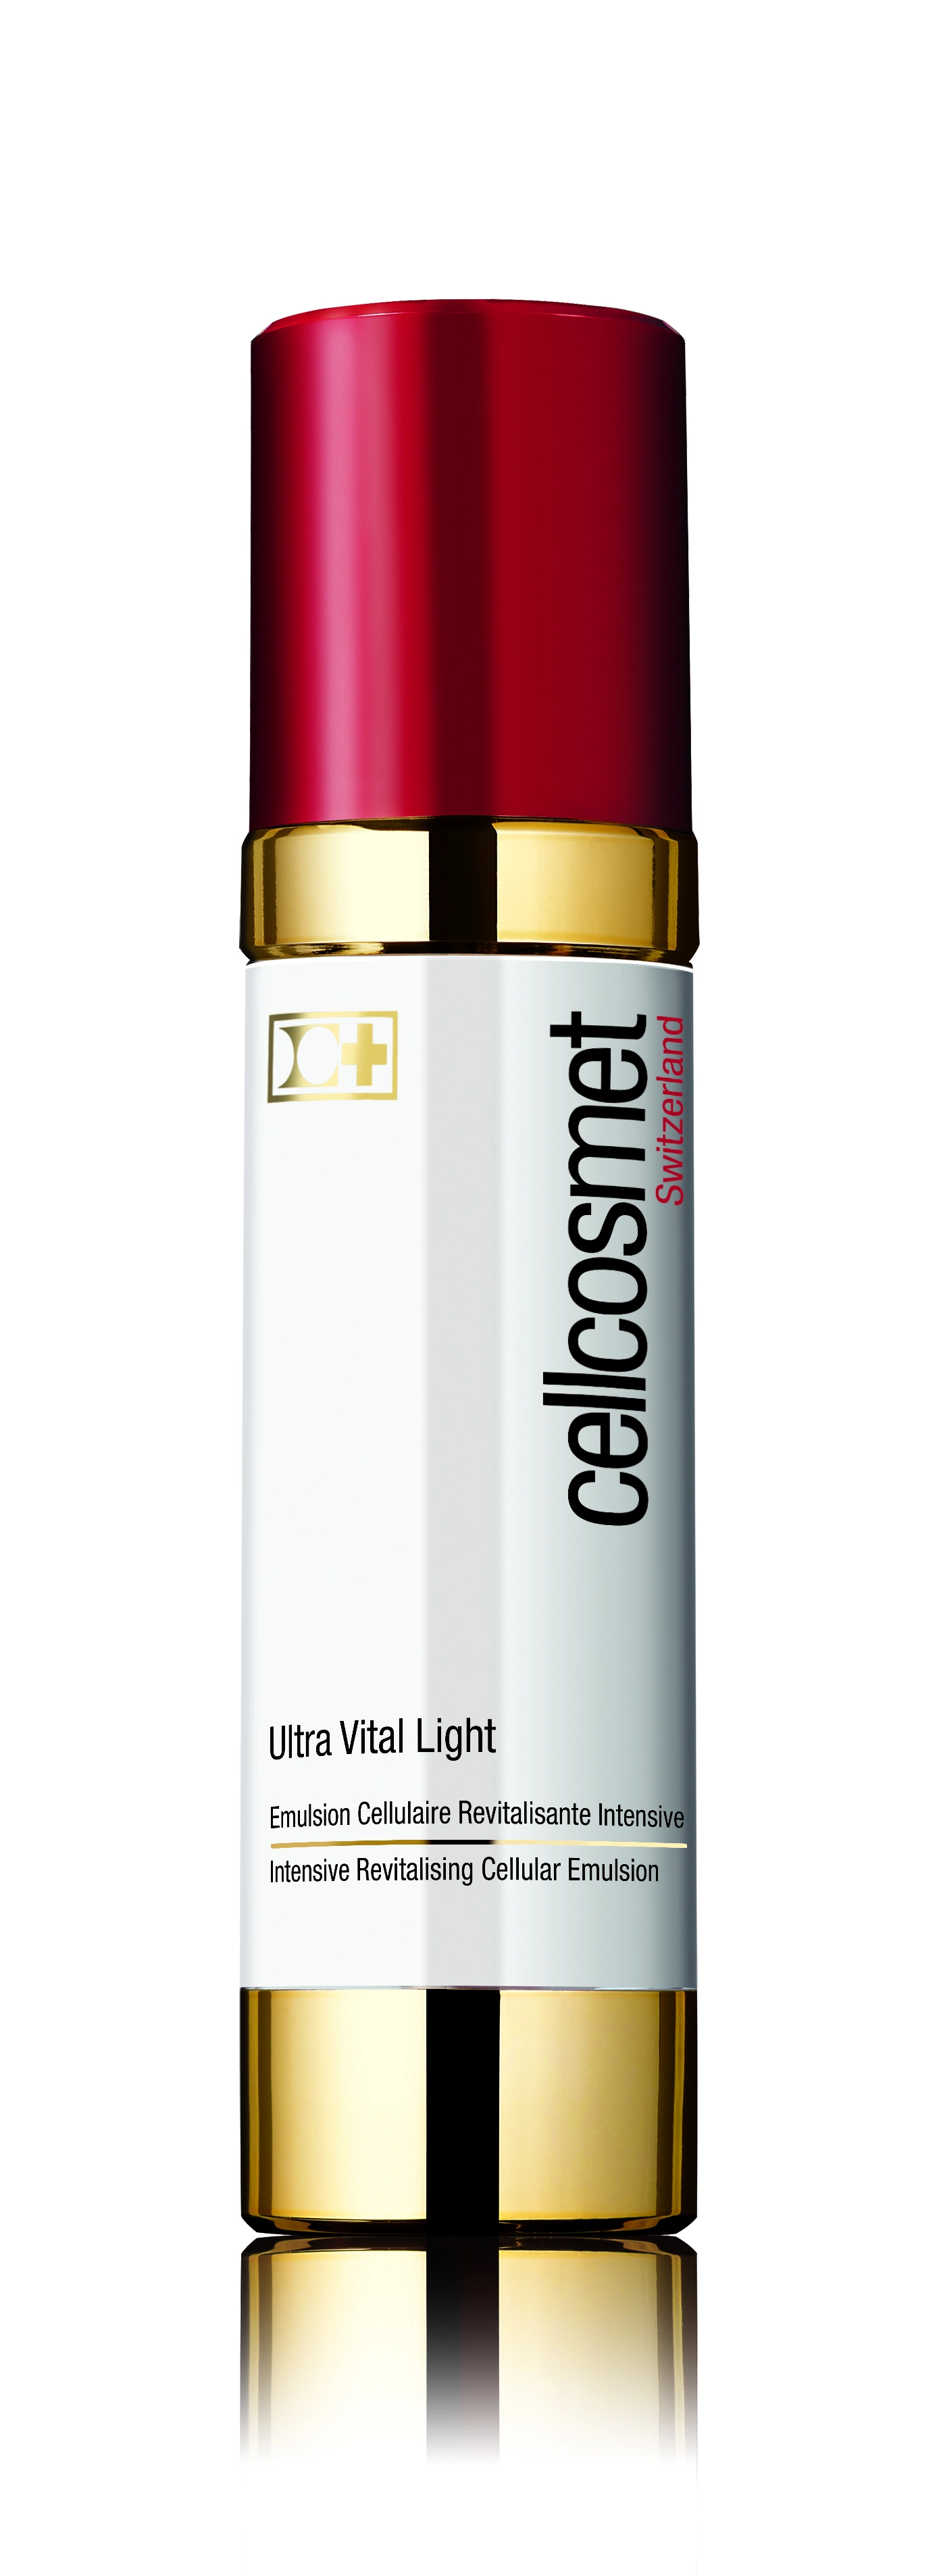 Cellcosmet & Cellmen Ultra Vital Light - Gen 2.0 Клеточная интенсивная эмульсия ульравитальная лайт, 50 мл